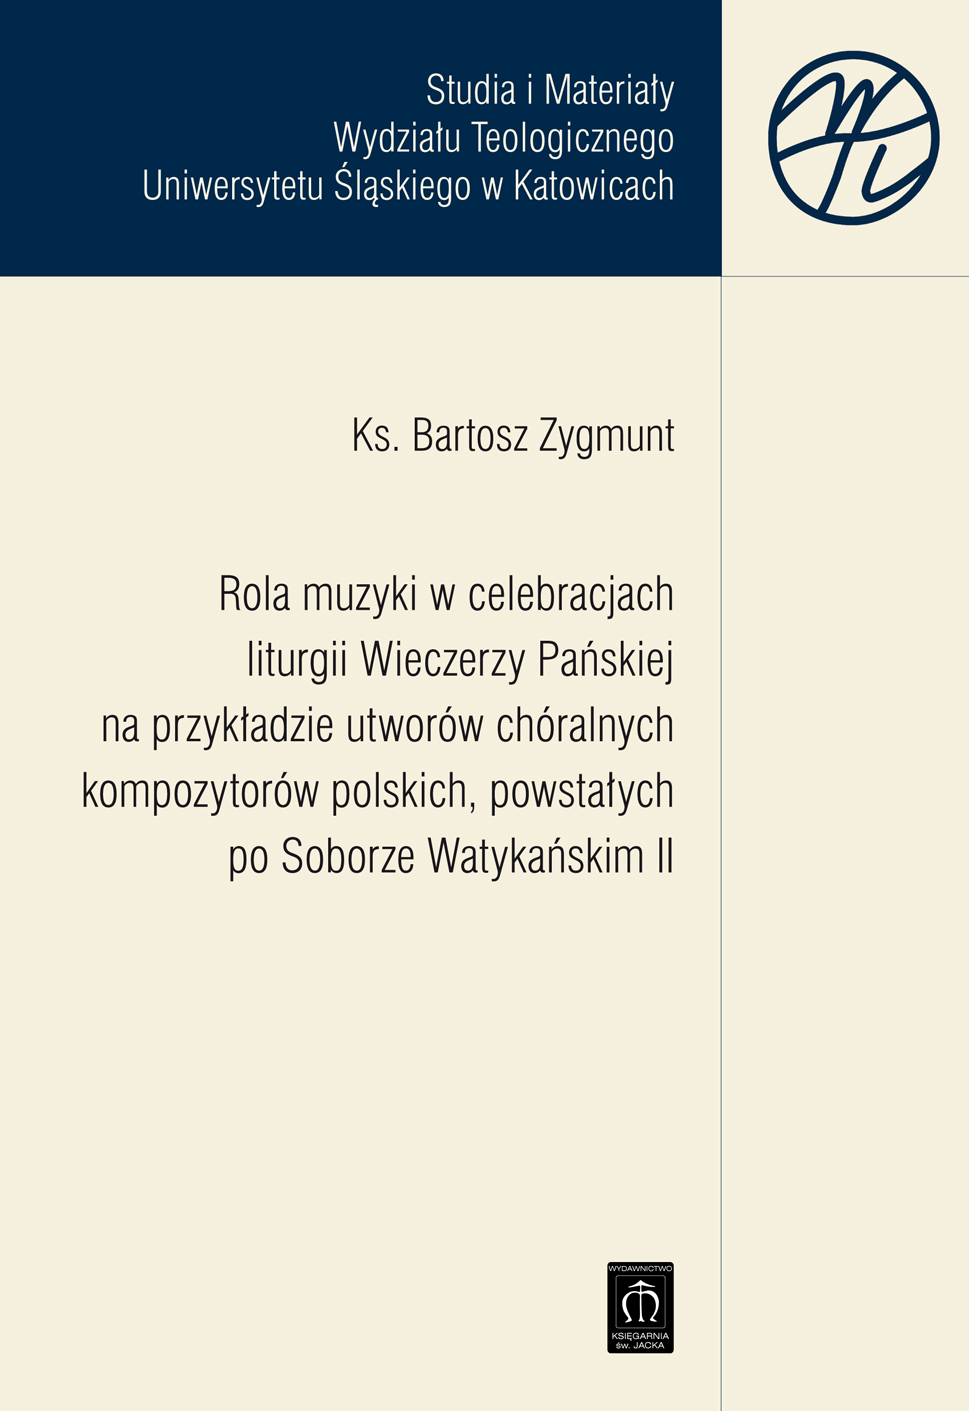 Rola muzyki w celebracjach liturgii Wieczerzy Pańskiej na przykładzie utworów chóralnych kompozytorów polskich, powstałych po Soborze Watykańskim II